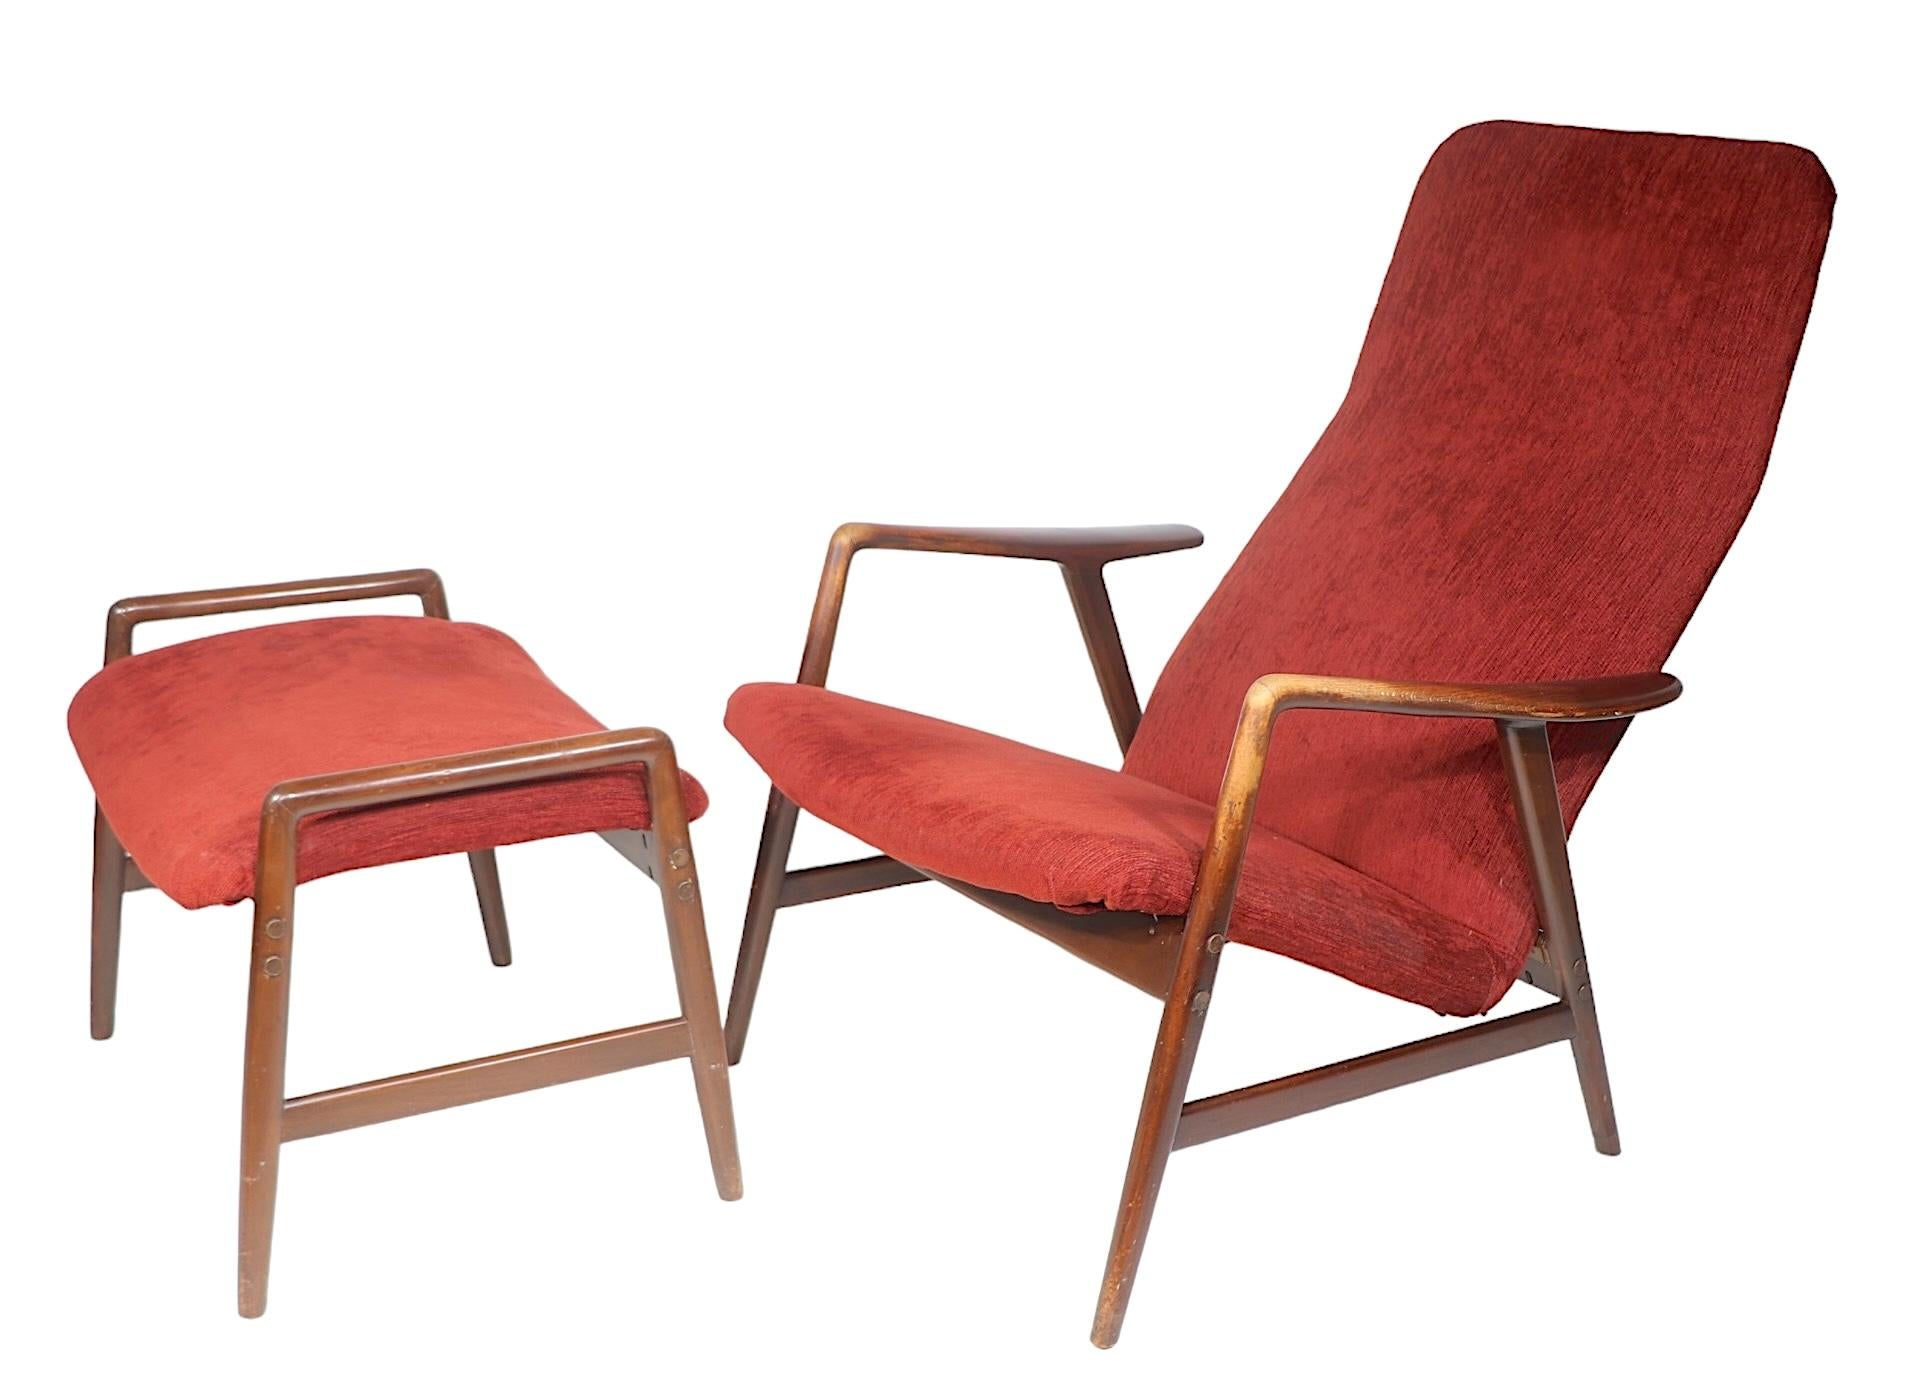 Architecture chic Mid Century  Chaise longue et ottoman conçus par Alf Svensson pour Fritz Hansen, fabriqués au Danemark vers les années 1960. Cet exemple est en très bon état, propre et prêt à l'emploi, il est actuellement en  une finition plus